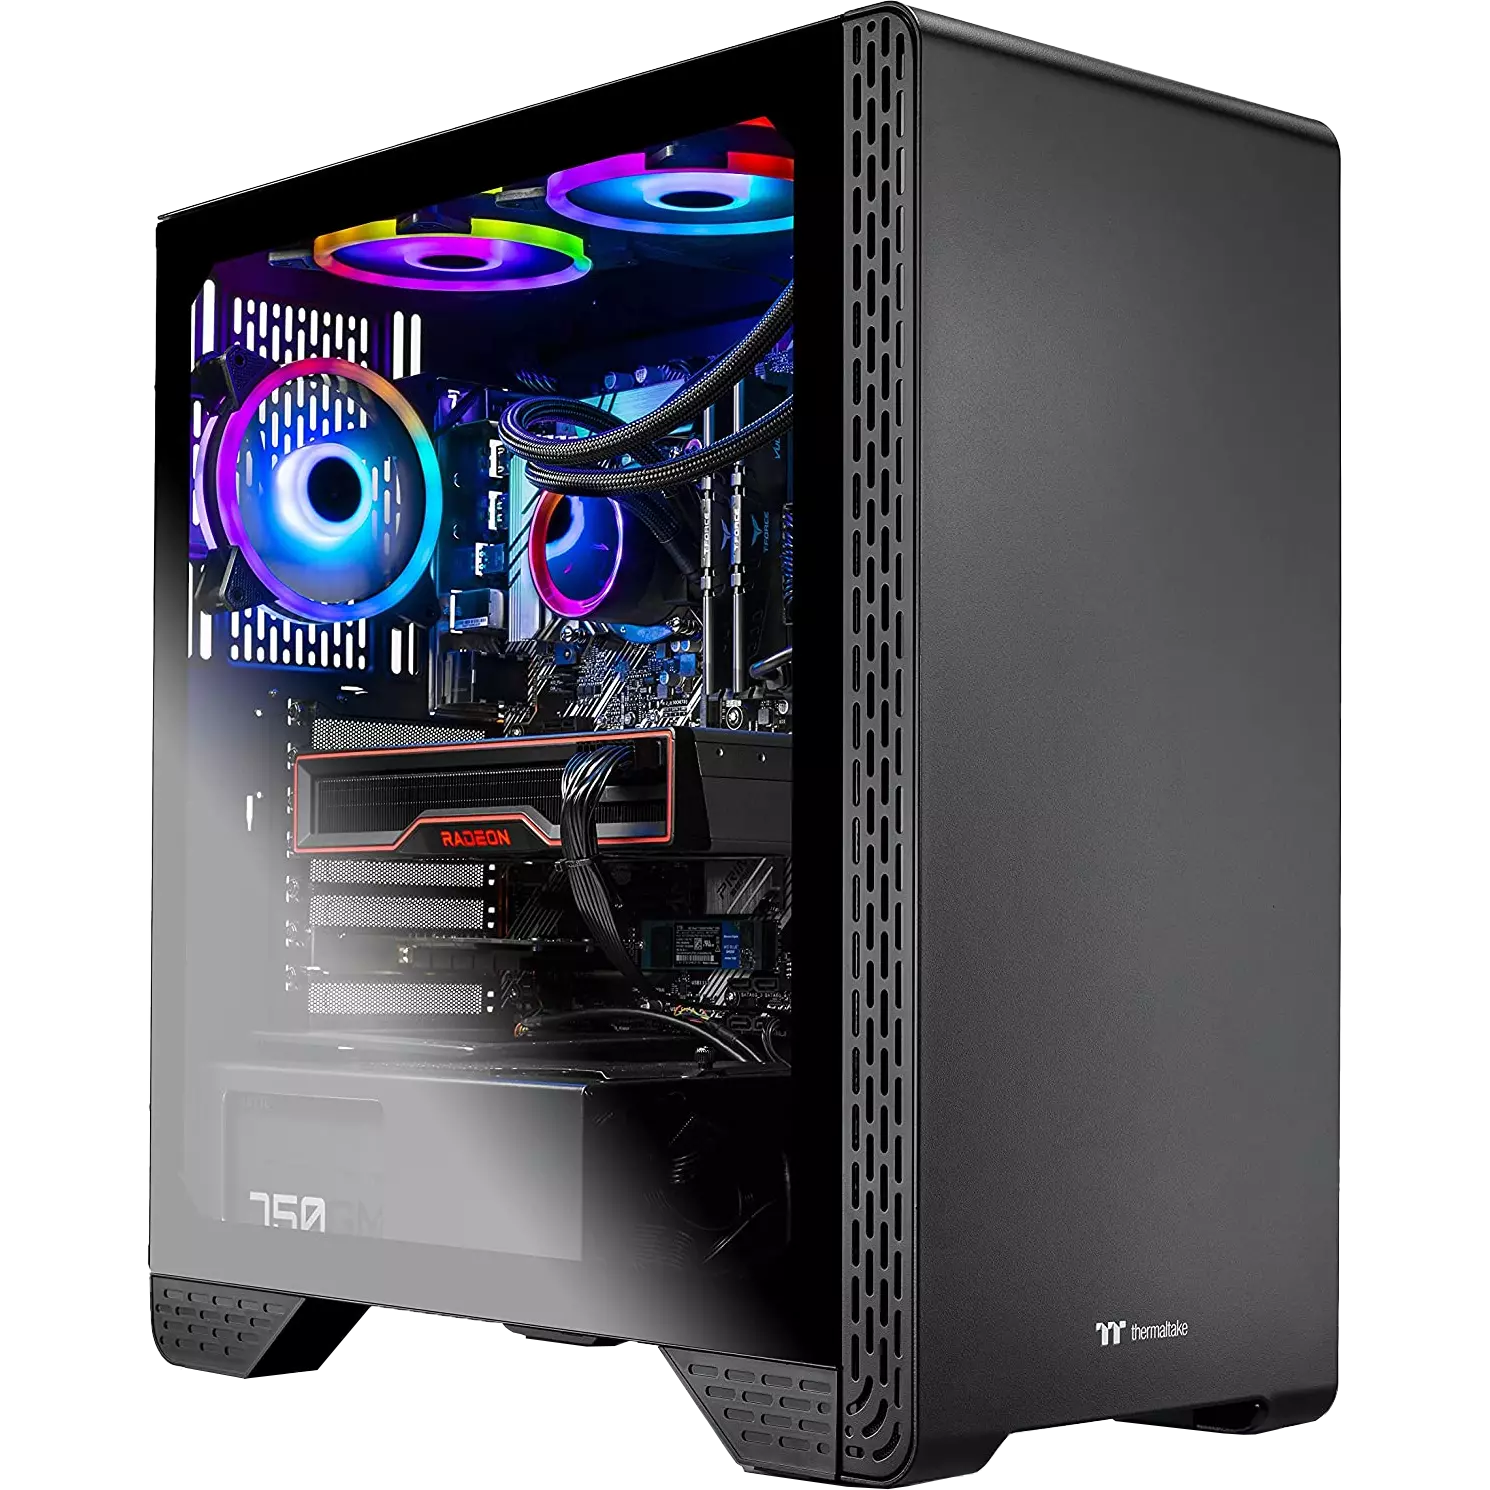 Siege 3.0 AMD Ryzen 7 5800X 8-Core 3.8 GHz (4.7 GHz Max Boost)